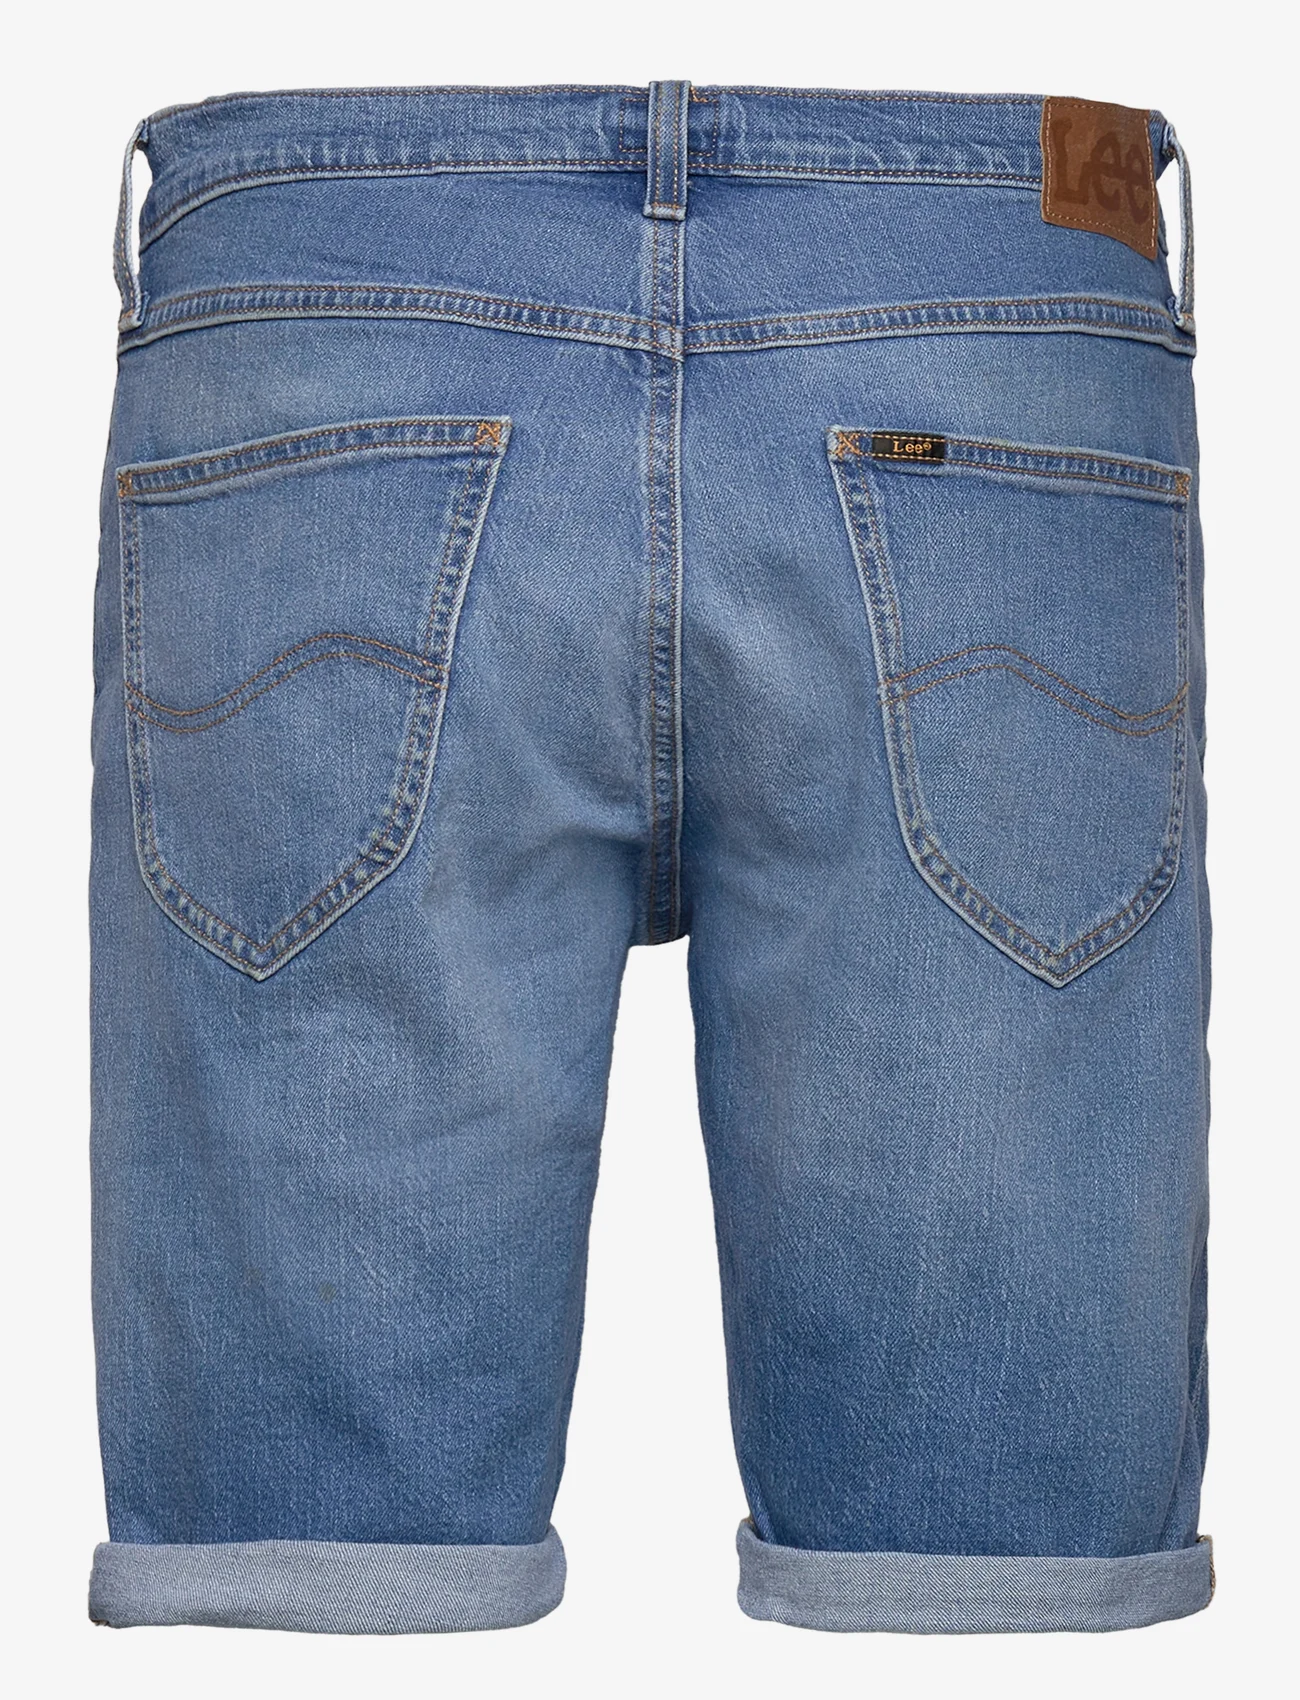 Lee Jeans - 5 POCKET SHORT - denim shorts - sea side - 1